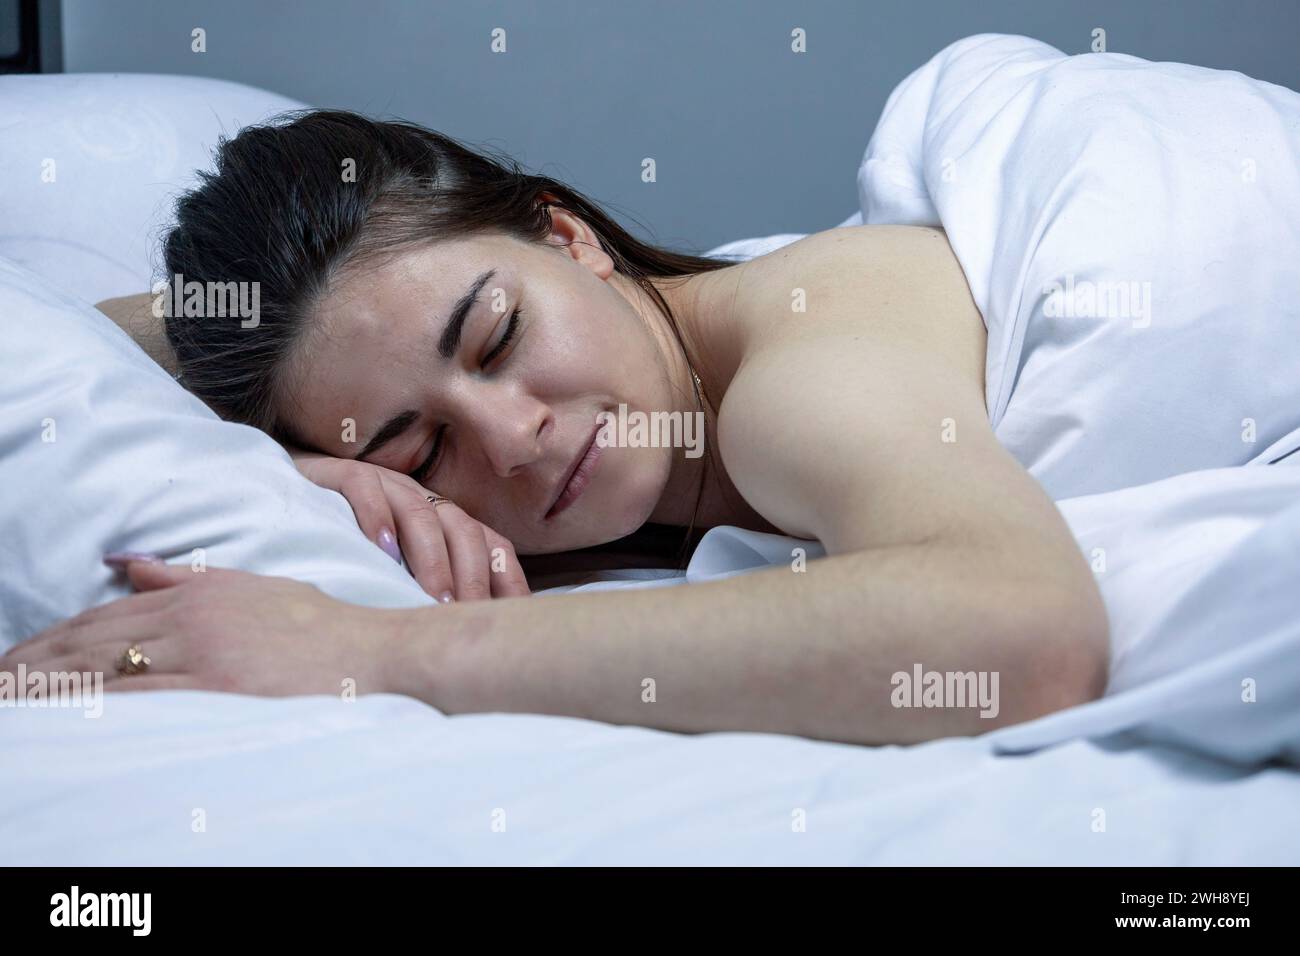 La ragazza dorme in un letto bianco. Foto Stock